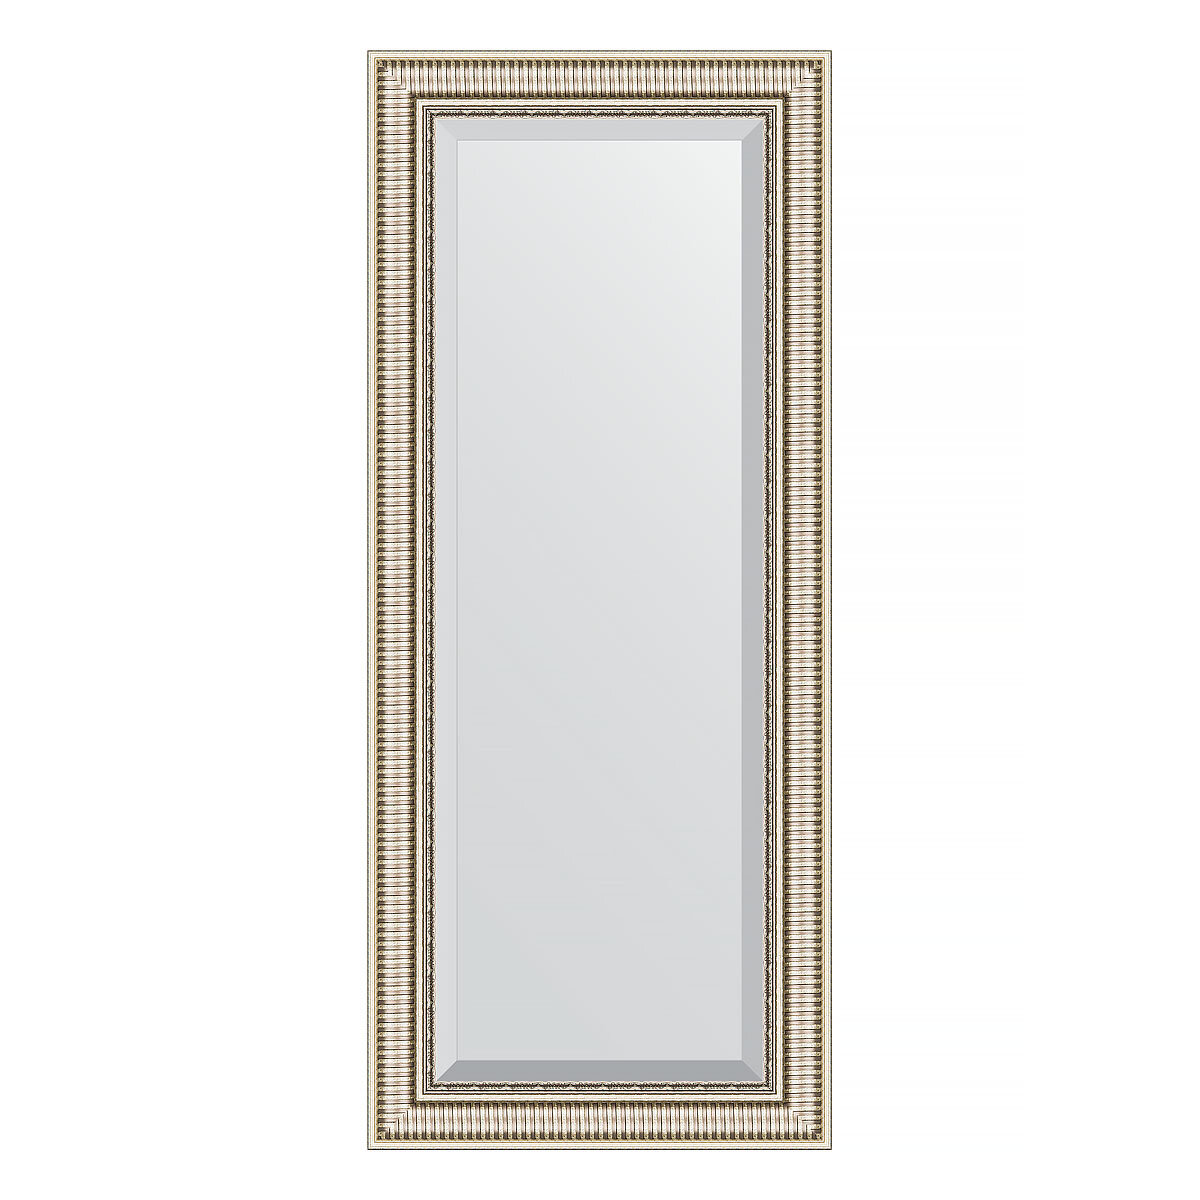 Зеркало настенное с фацетом EVOFORM в багетной раме серебряный акведук, 62х147 см, для гостиной, прихожей, спальни и ванной комнаты, BY 1268